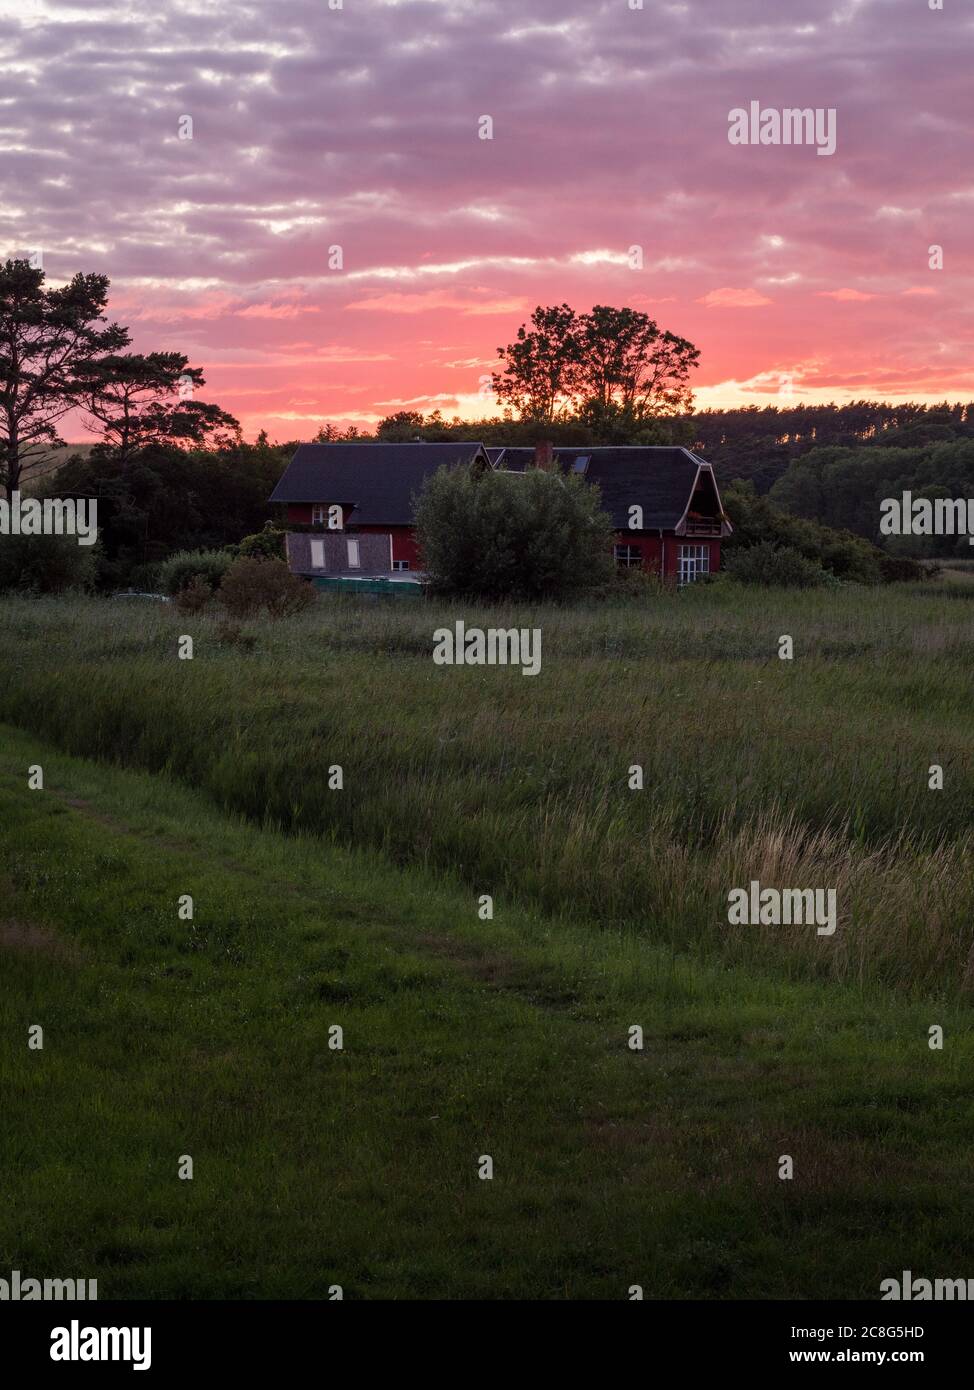 Sonnenuntergang Sonnenaufgang auf einem Getreidefeld auf der Insel Rügen mit einer Farm, Bäumen, Strohballen, roten Mohnblumen nach einem Gewitter Foto Stock